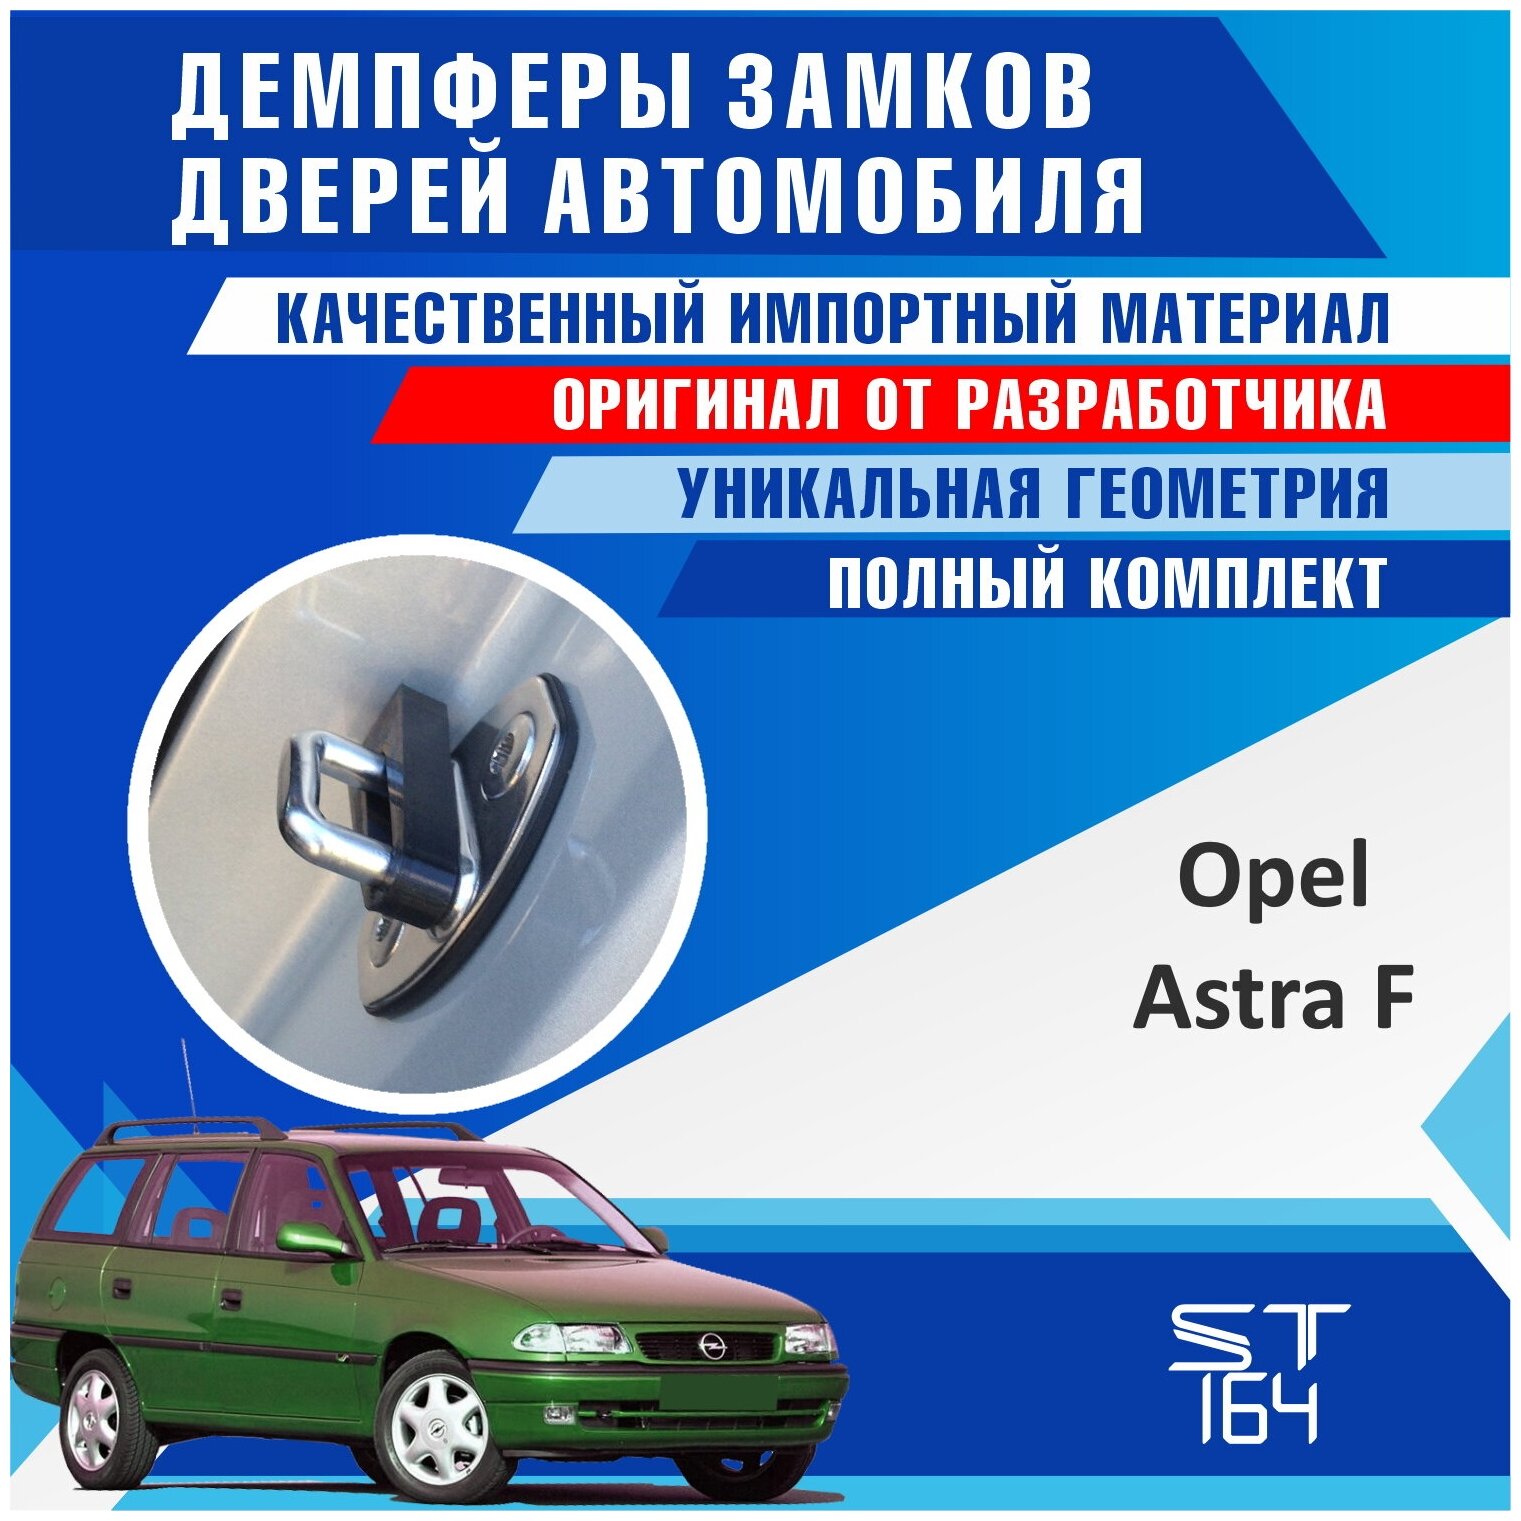 Демпферы замков дверей Опель Астра F ( Opel Astra F ), на 4 двери + смазка